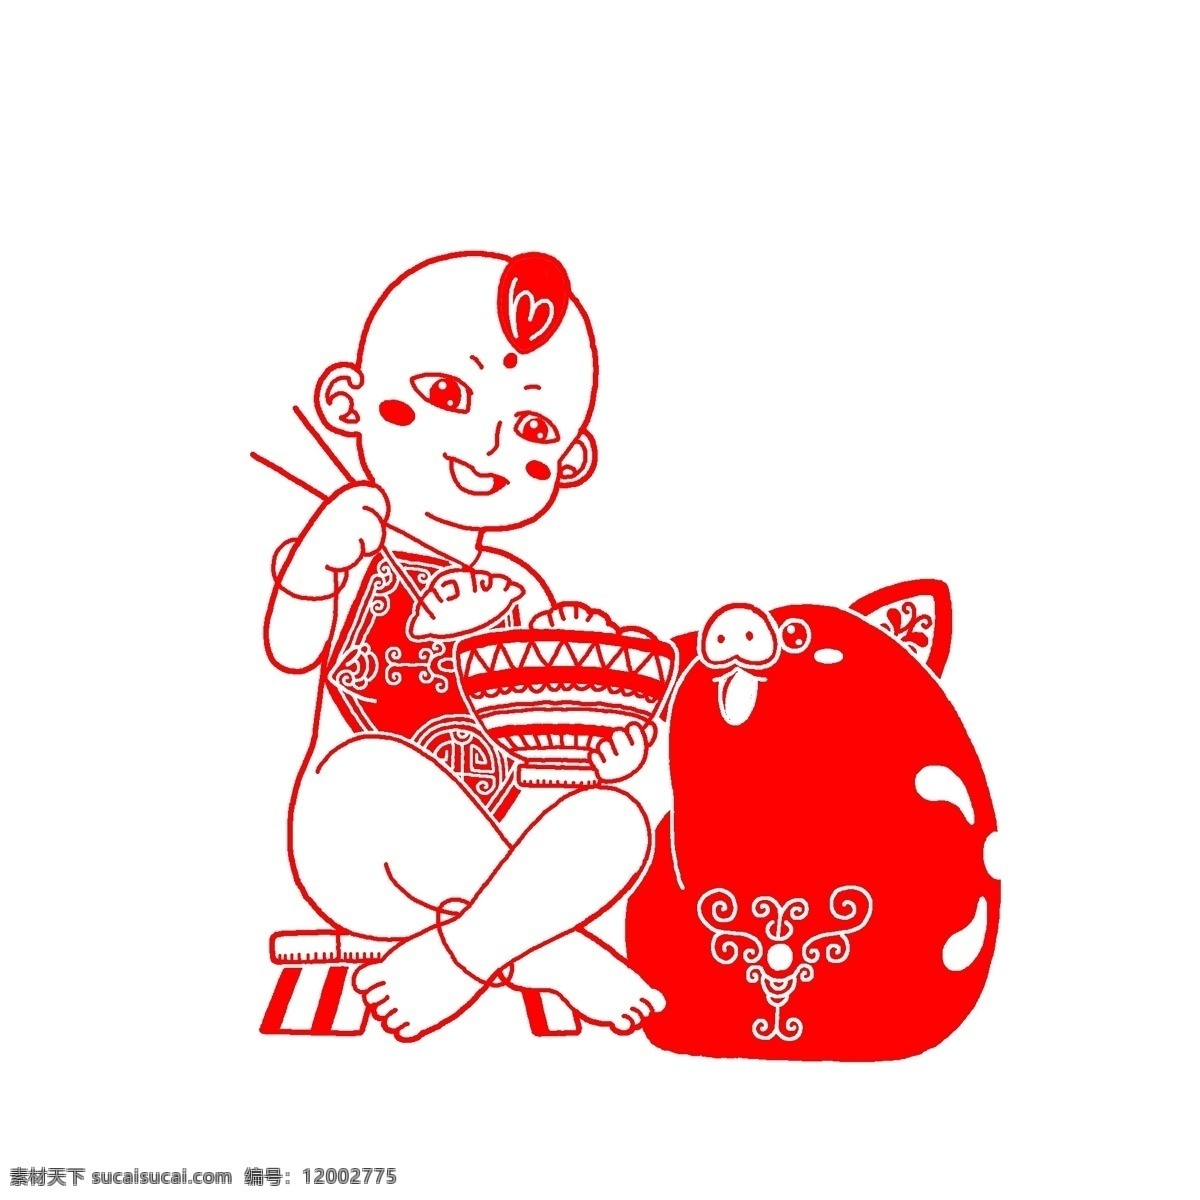 红色 剪纸 猪 插画 红色的小猪 可爱的小猪 小猪插画 卡通人物 小猪吃饭插画